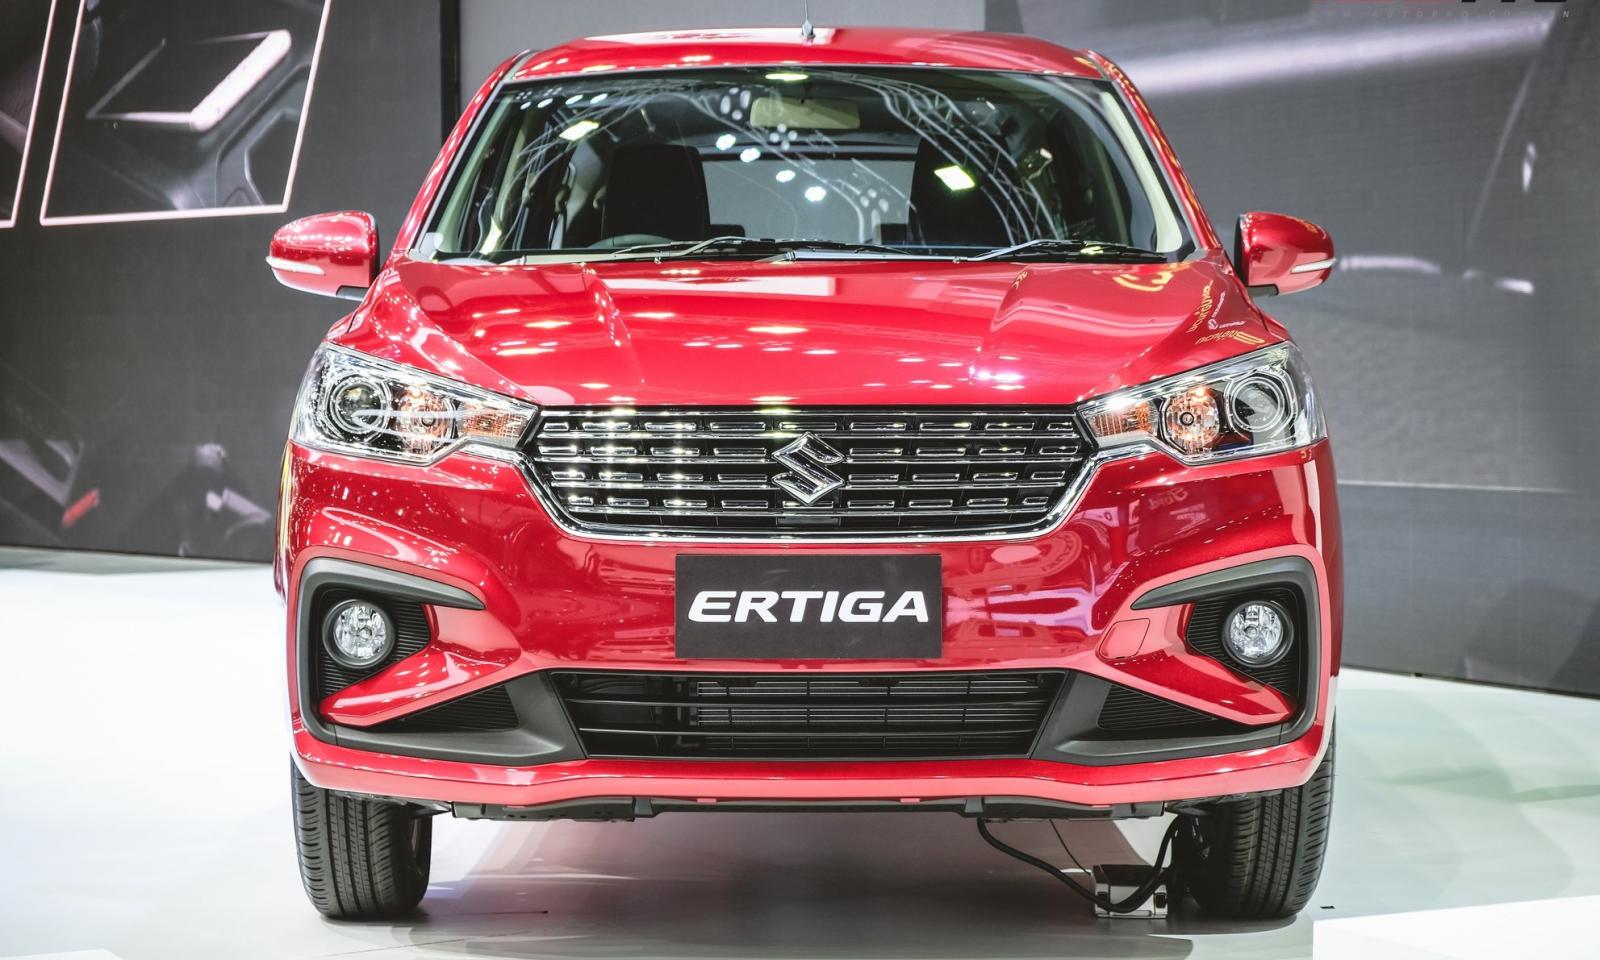 Đại lý nhận cọc đặt mua Suzuki Ertiga 2019 chỉ từ 5 triệu đồng